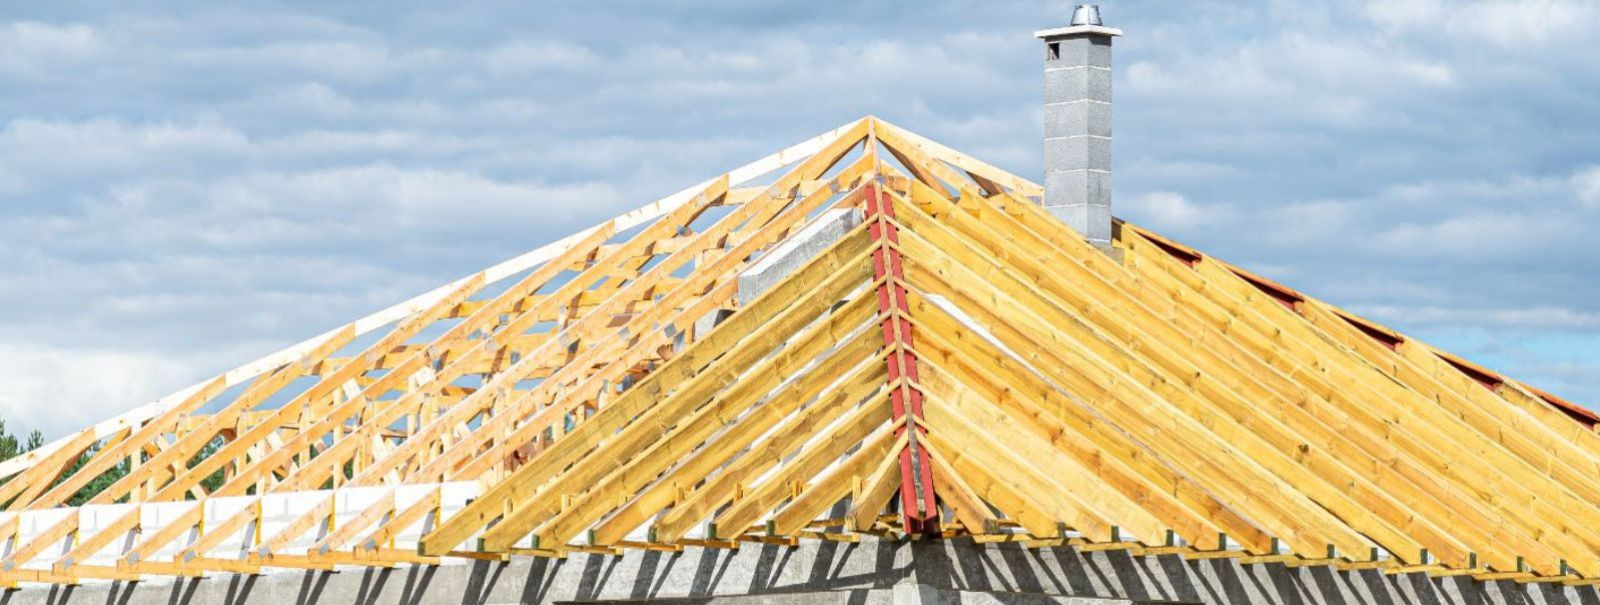 Kui on aeg rajada või renoveerida oma kodu katus, on oluline omada piisavalt teadmisi ja mõista, kuidas tagada katusesüsteemi tugevus ja veekindlus. Tugev ja ve